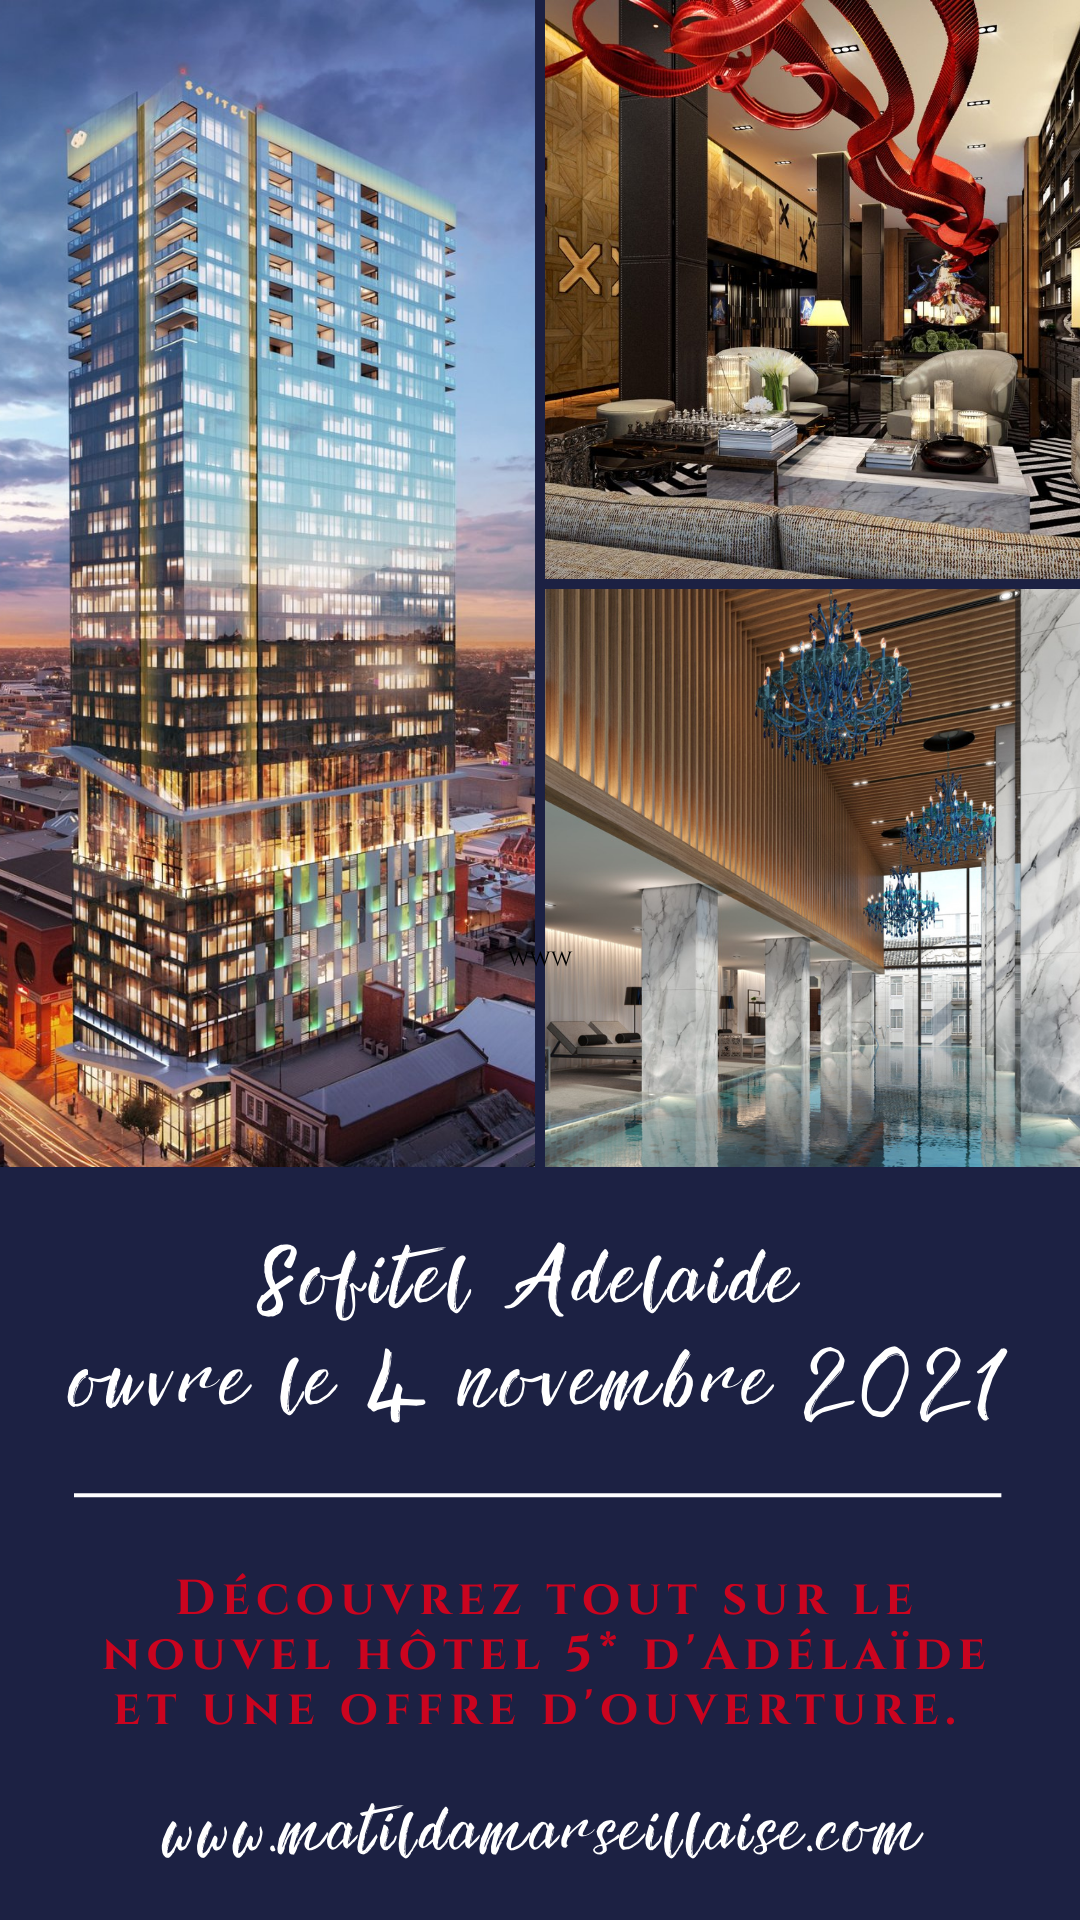 Le Sofitel Adelaide, le nouvel hôtel 5 étoiles de la ville, ouvrira début novembre